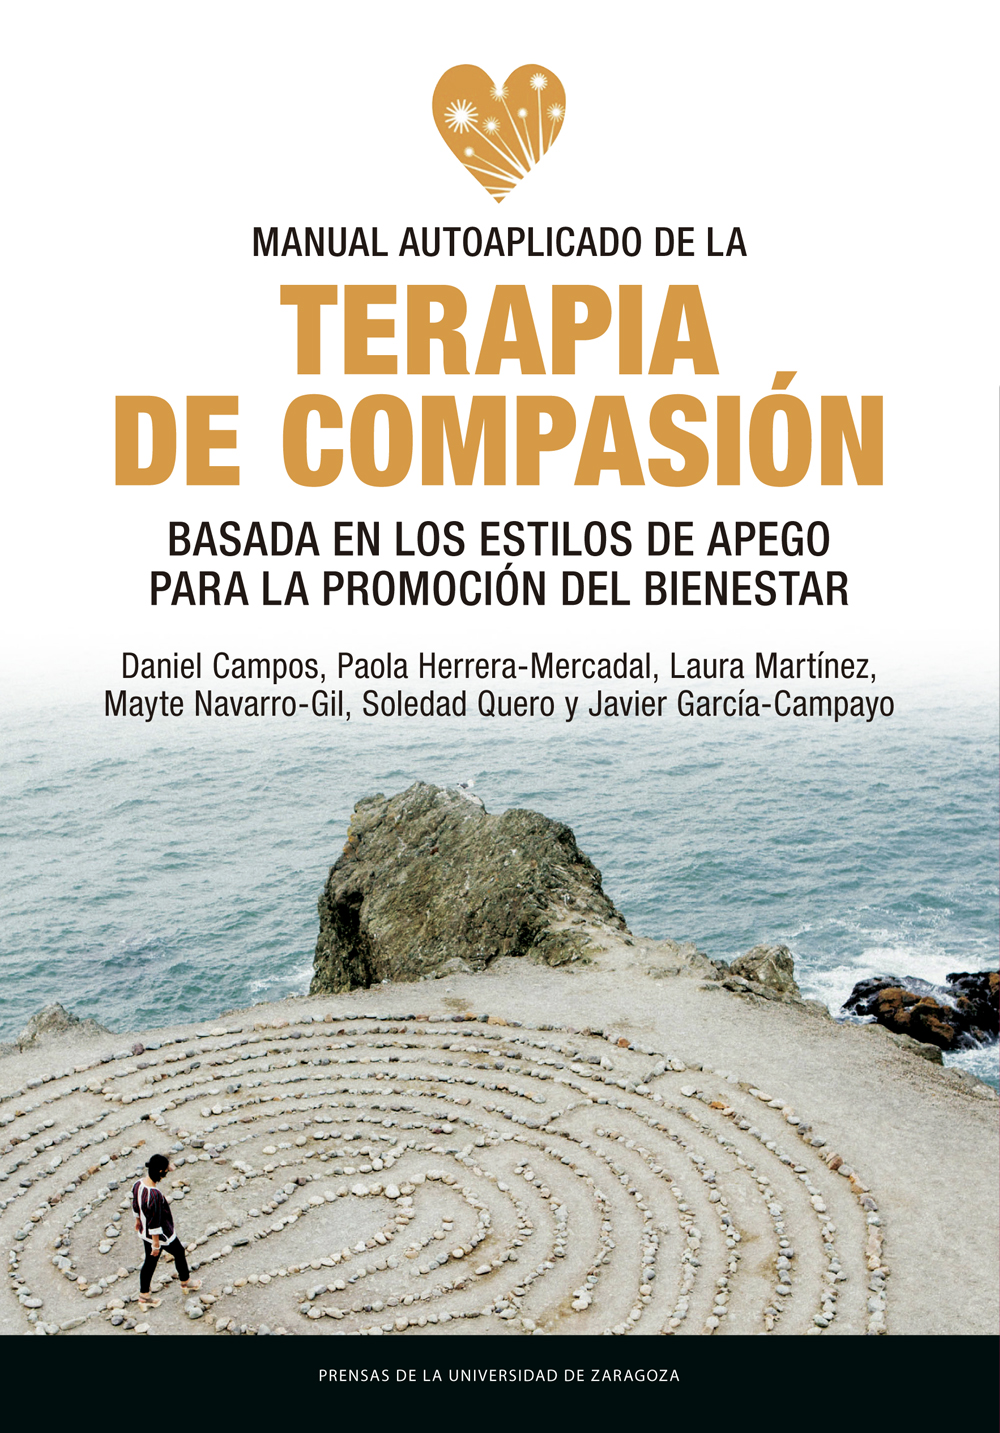 Manual autoaplicado de la terapia de compasión basada en los estilos de apego para la promoción del bienestar. 9788413401669